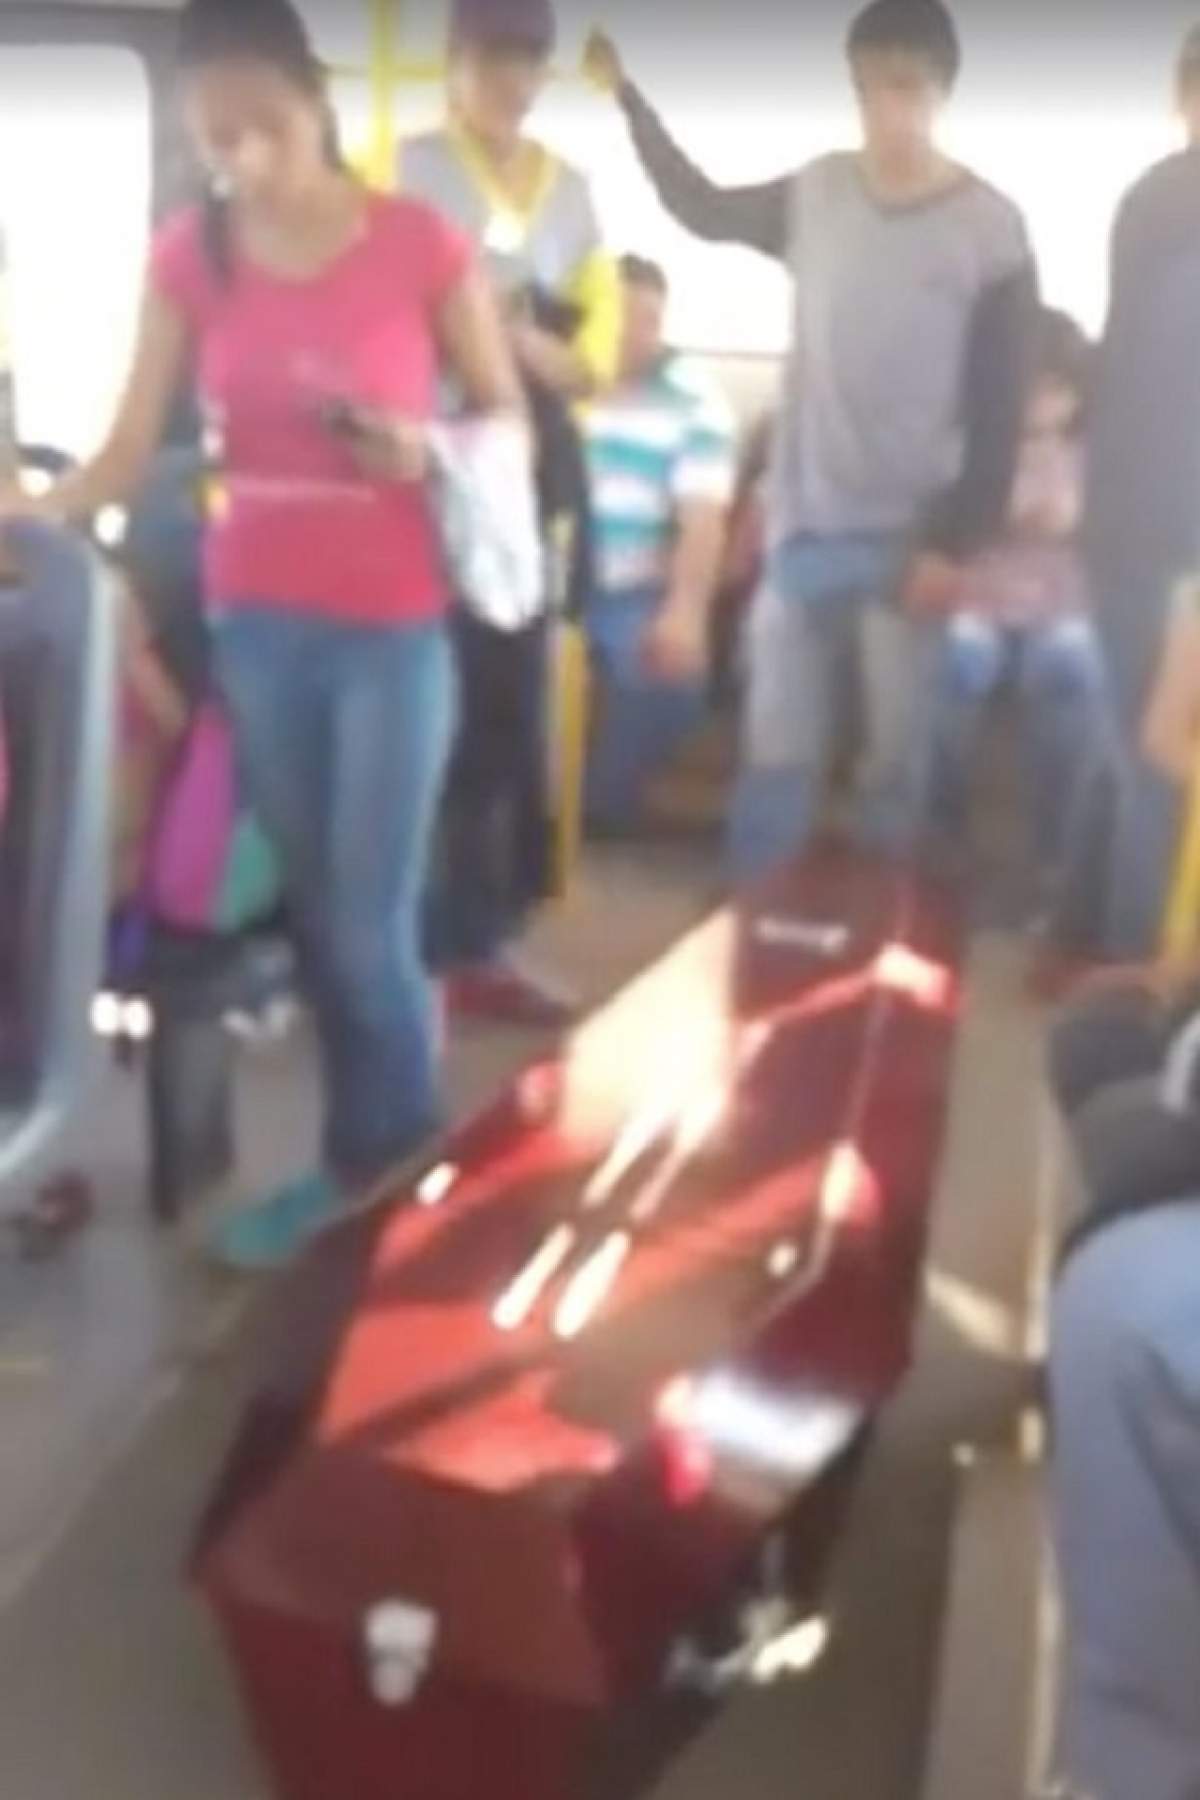 VIDEO / Mergeau cu autobuzul şi s-au trezit cu SICRIUL lângă ei! Întâmplarea bizară prin care a trecut o familie ÎNDURERATĂ